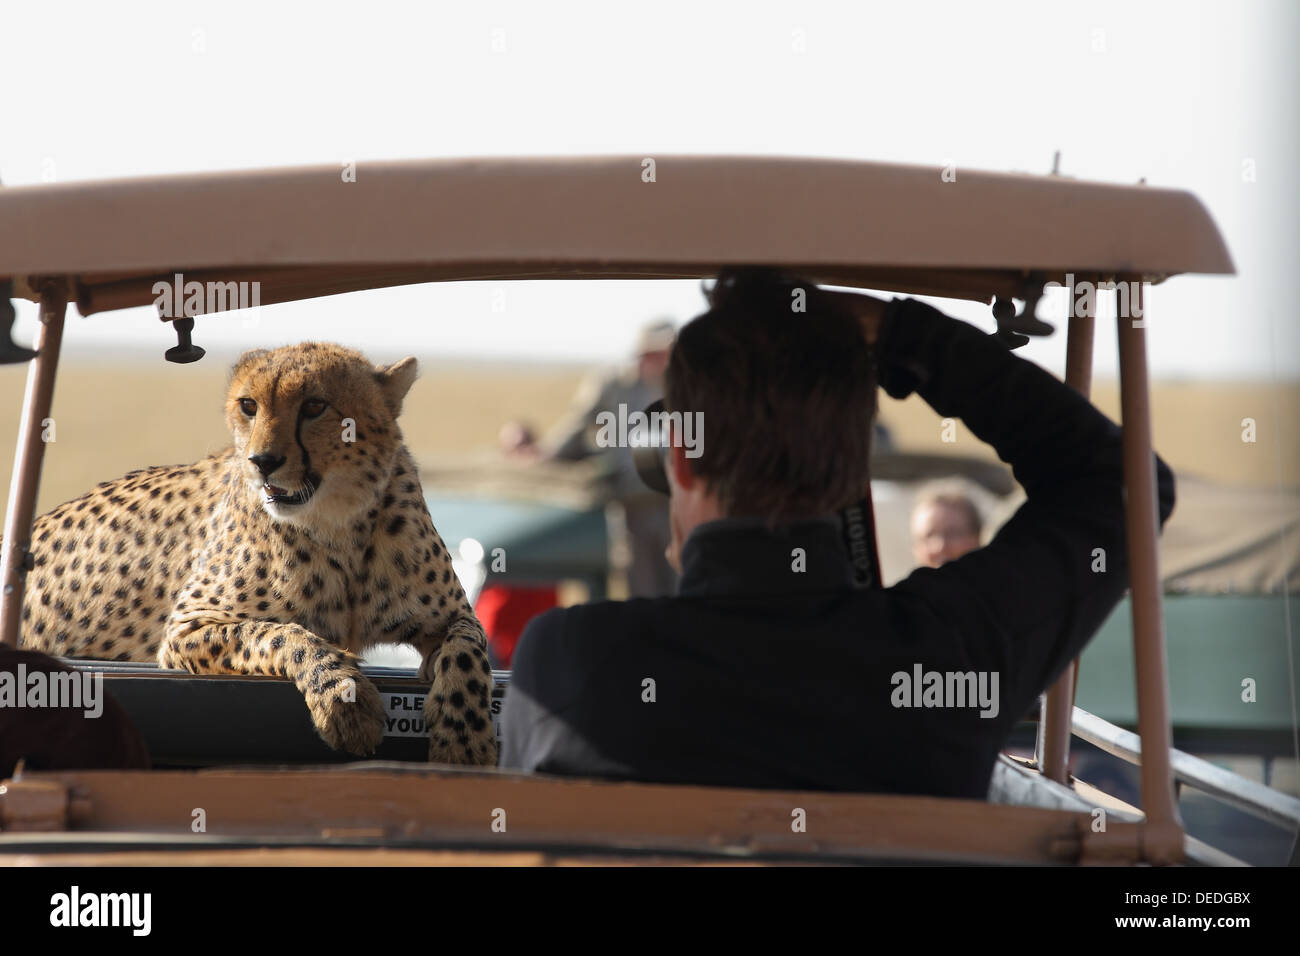 Tierwelt-Tourismus in der Masai Mara / Gepard auf touristische Fahrzeug in der Masai Mara, Afrika Stockfoto